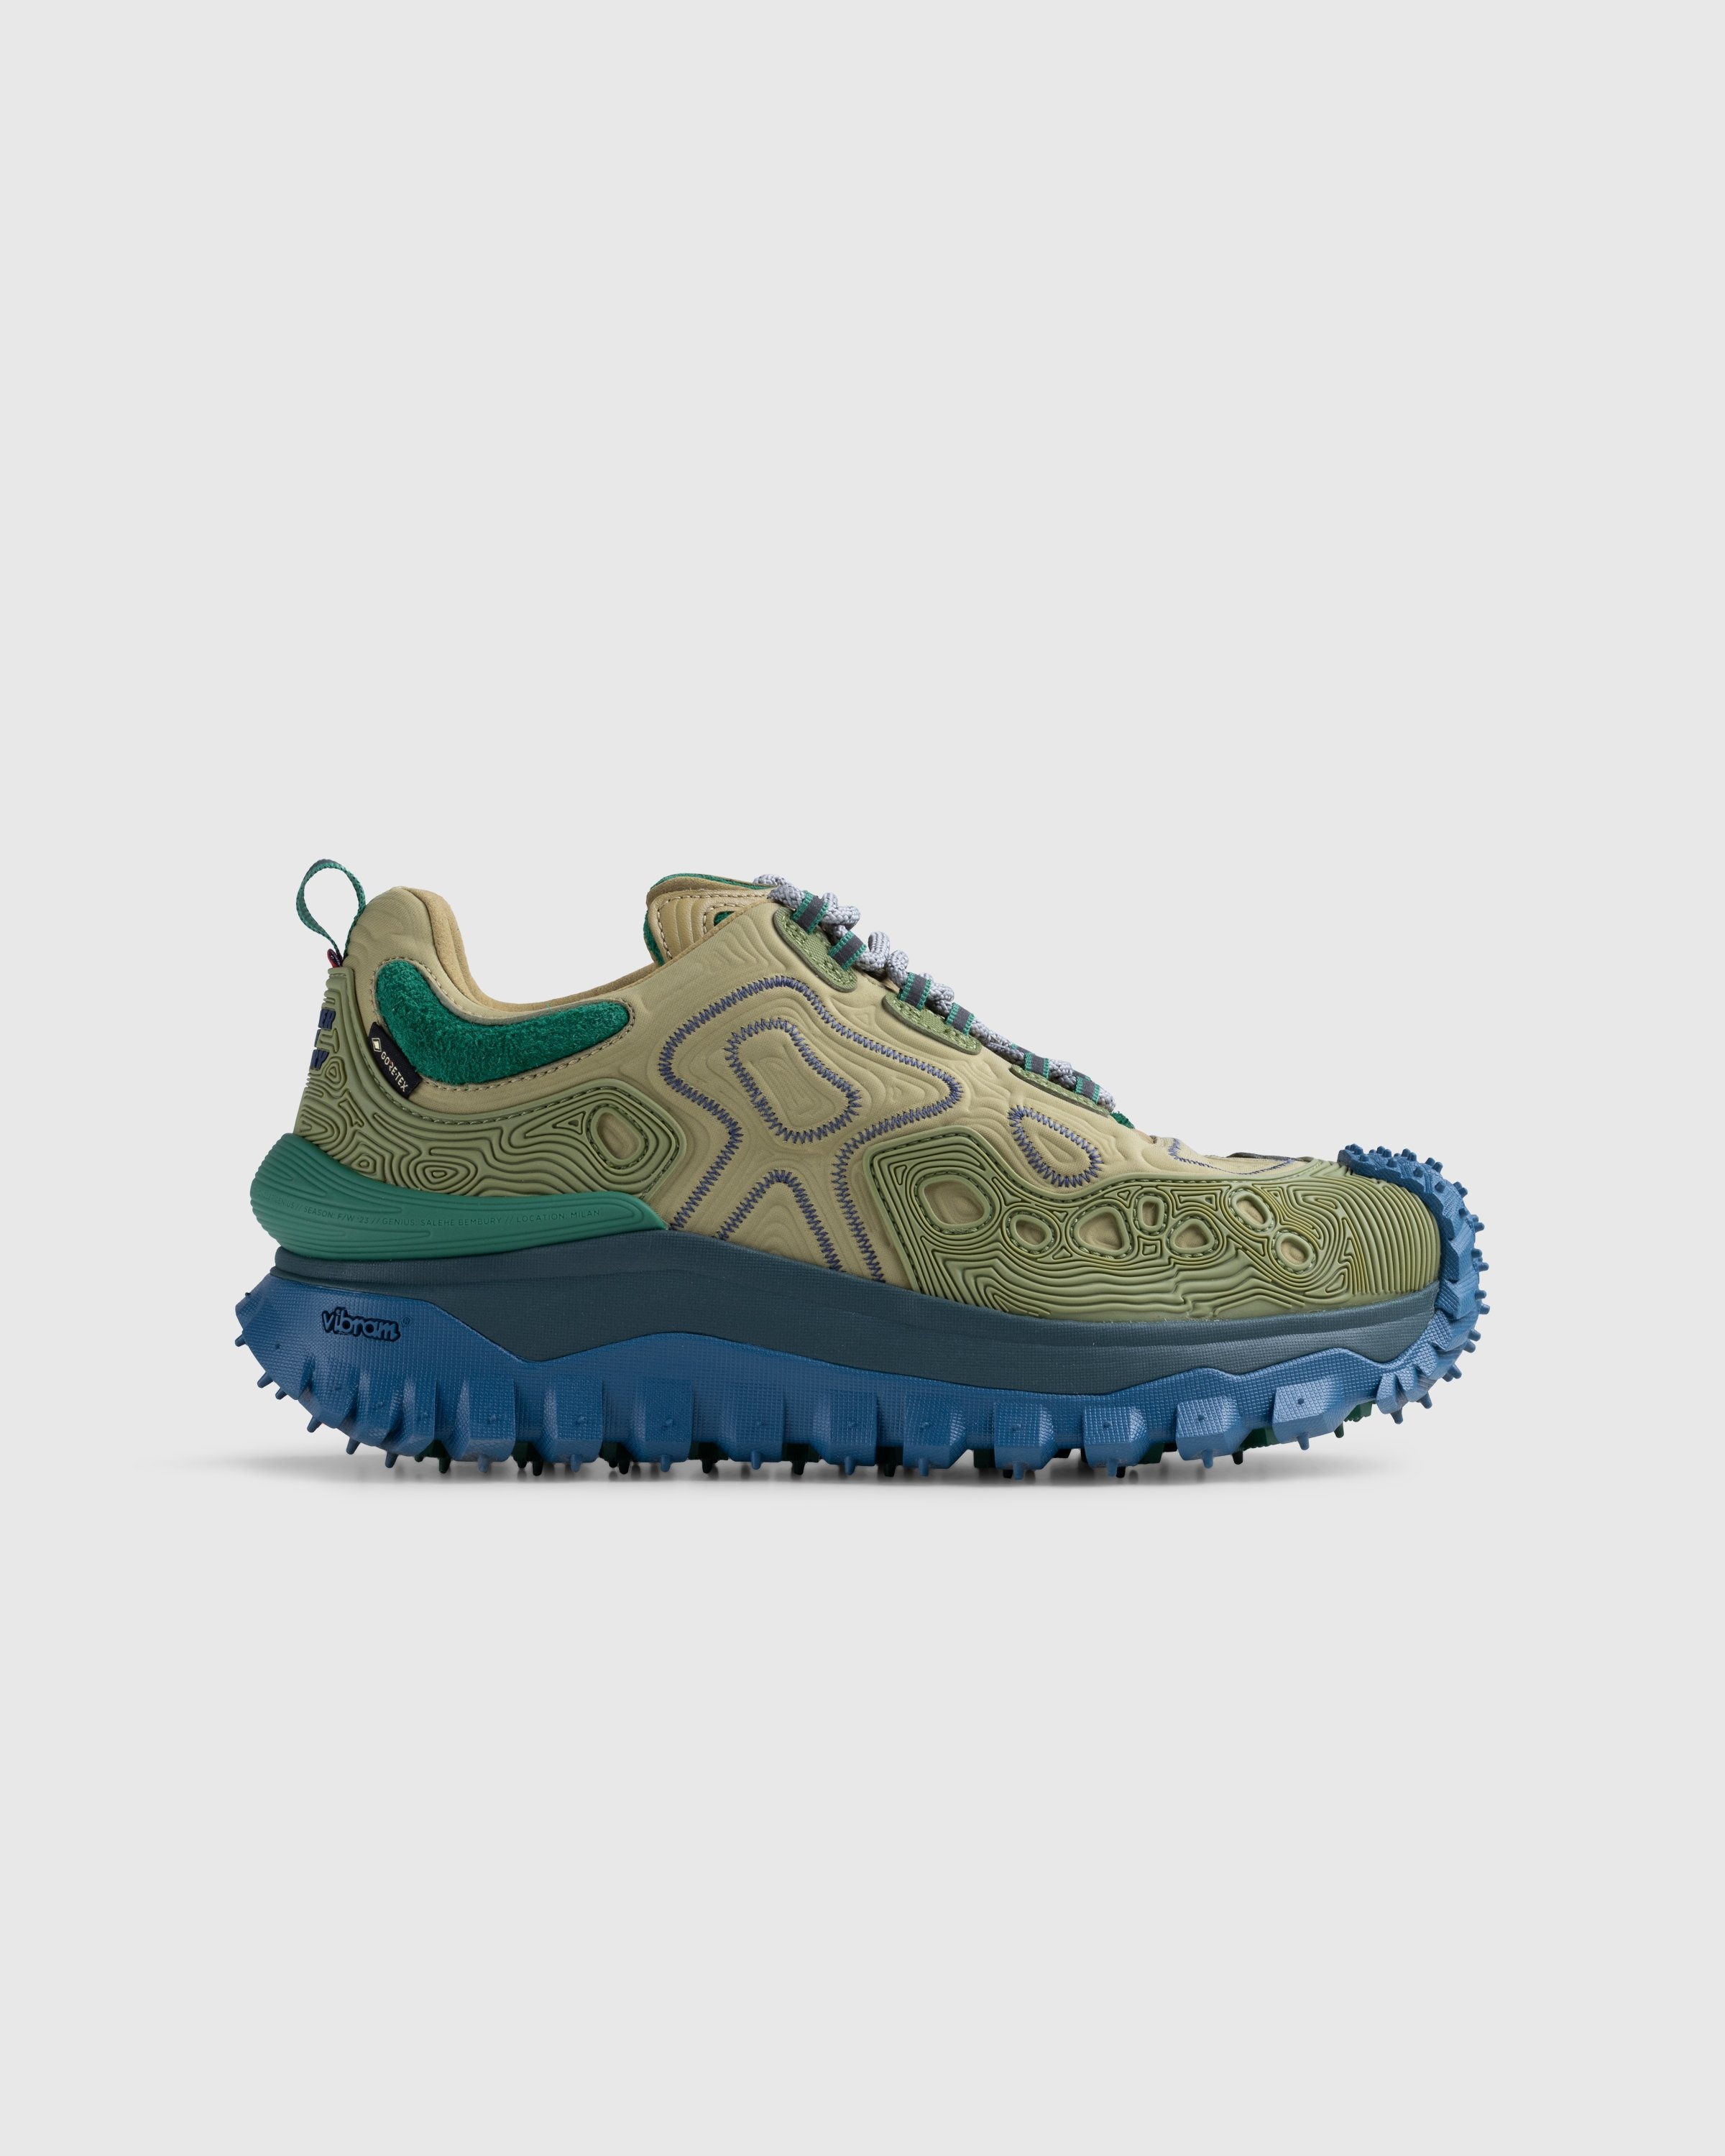 Moncler x Salehe Bembury – Trailgrip Grain Sneakers Beige - Low Top Sneakers - Beige - Image 1